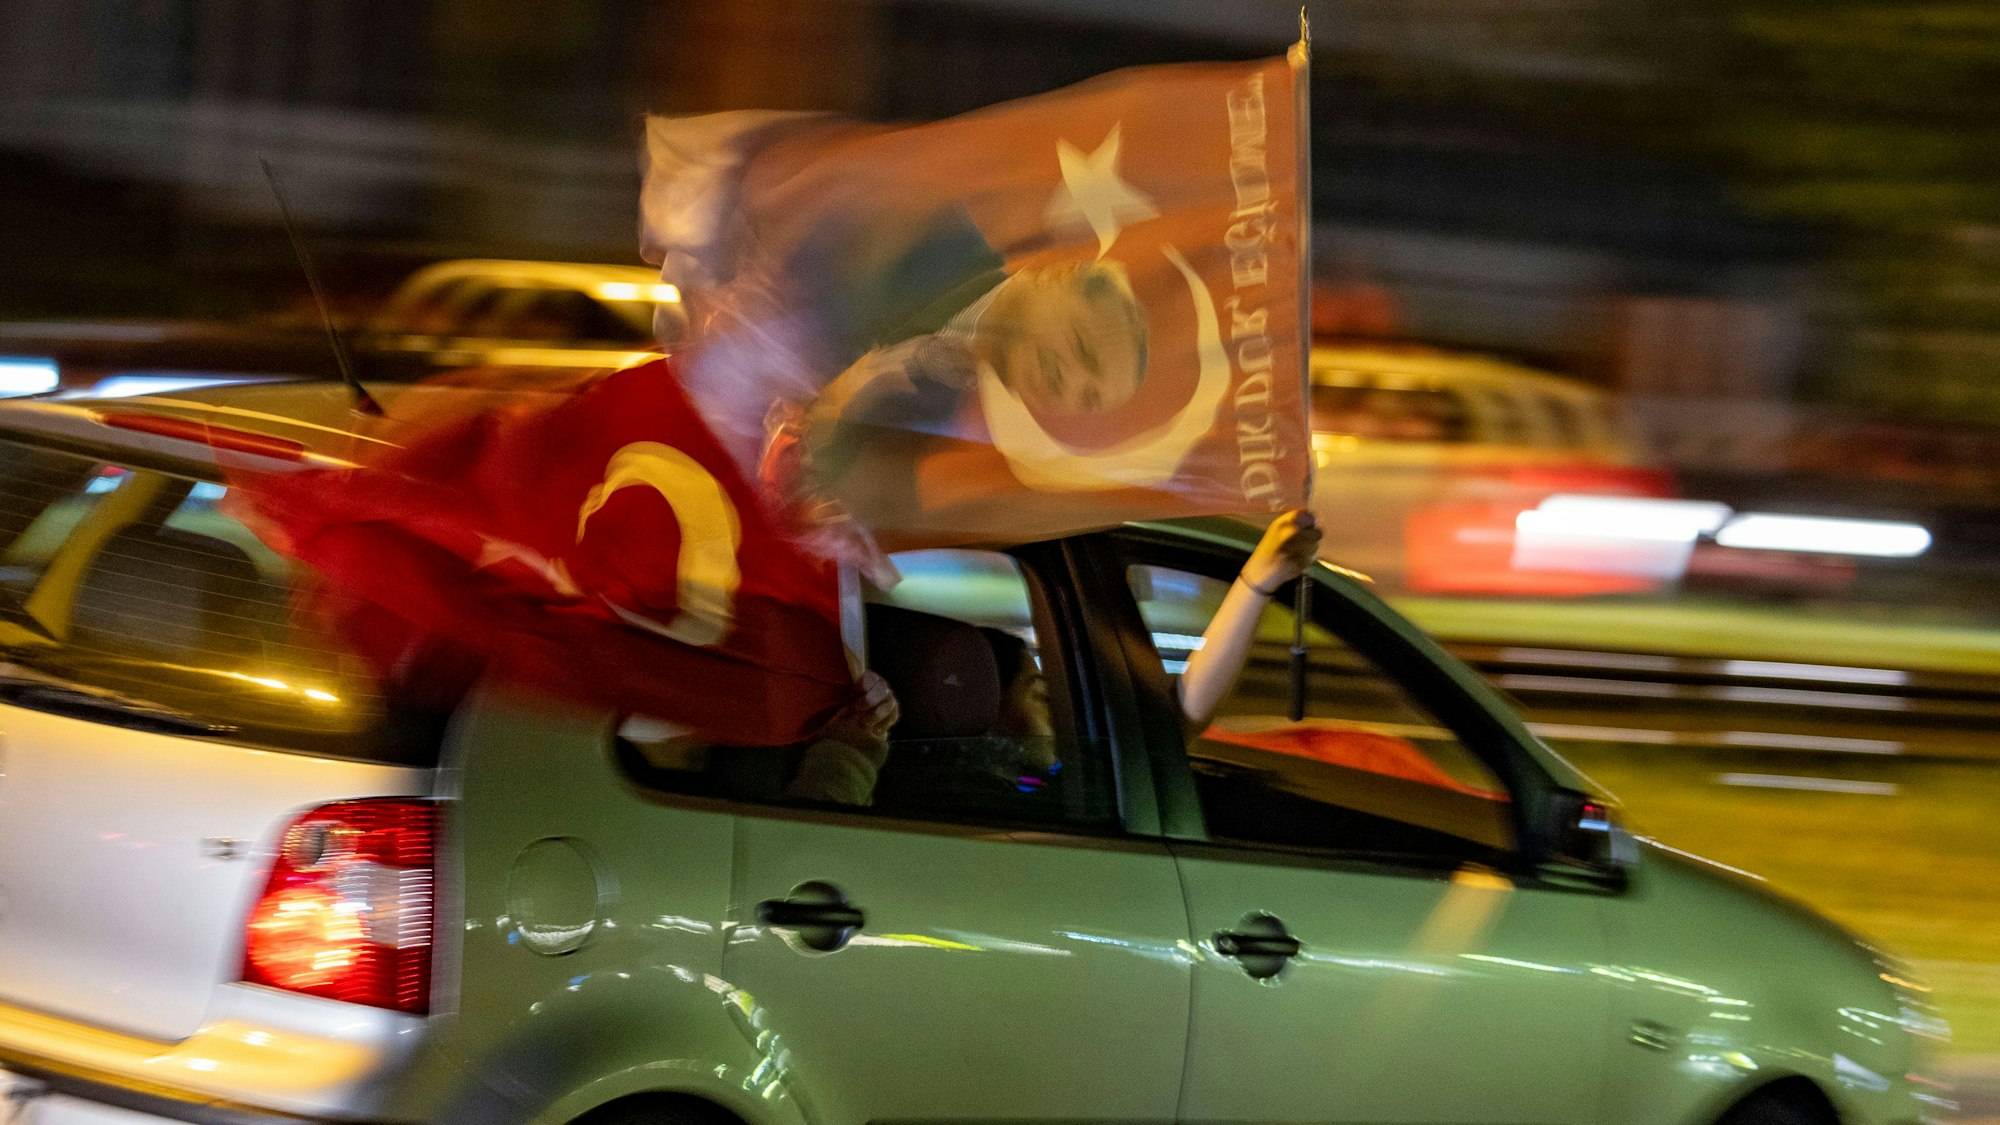 Am Abend der Wahl fahren Anhänger des bislang amtierenden türkischen Präsidenten Erdogan in Duisburg-Marxloh mit ihren Autos über die Straßen, Hupkonzerte ertönen, türkische Flaggen werden geschwenkt.